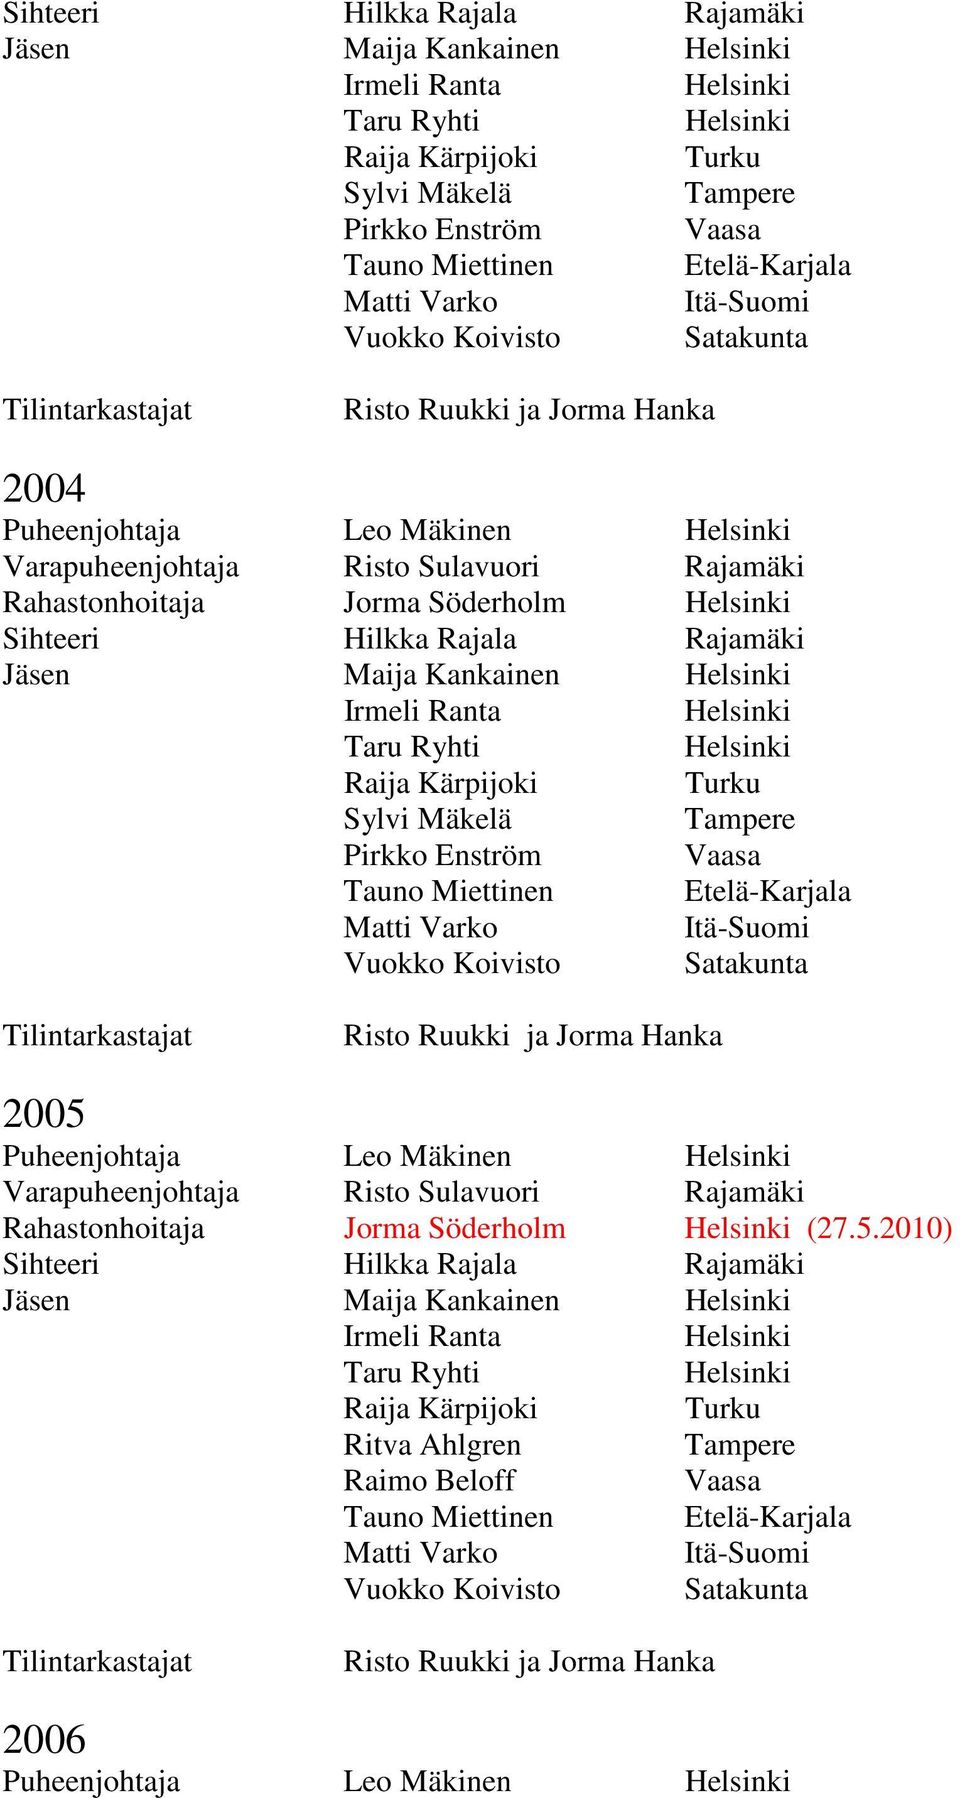 Puheenjohtaja Leo Mäkinen Rahastonhoitaja Jorma Söderholm (27.5.